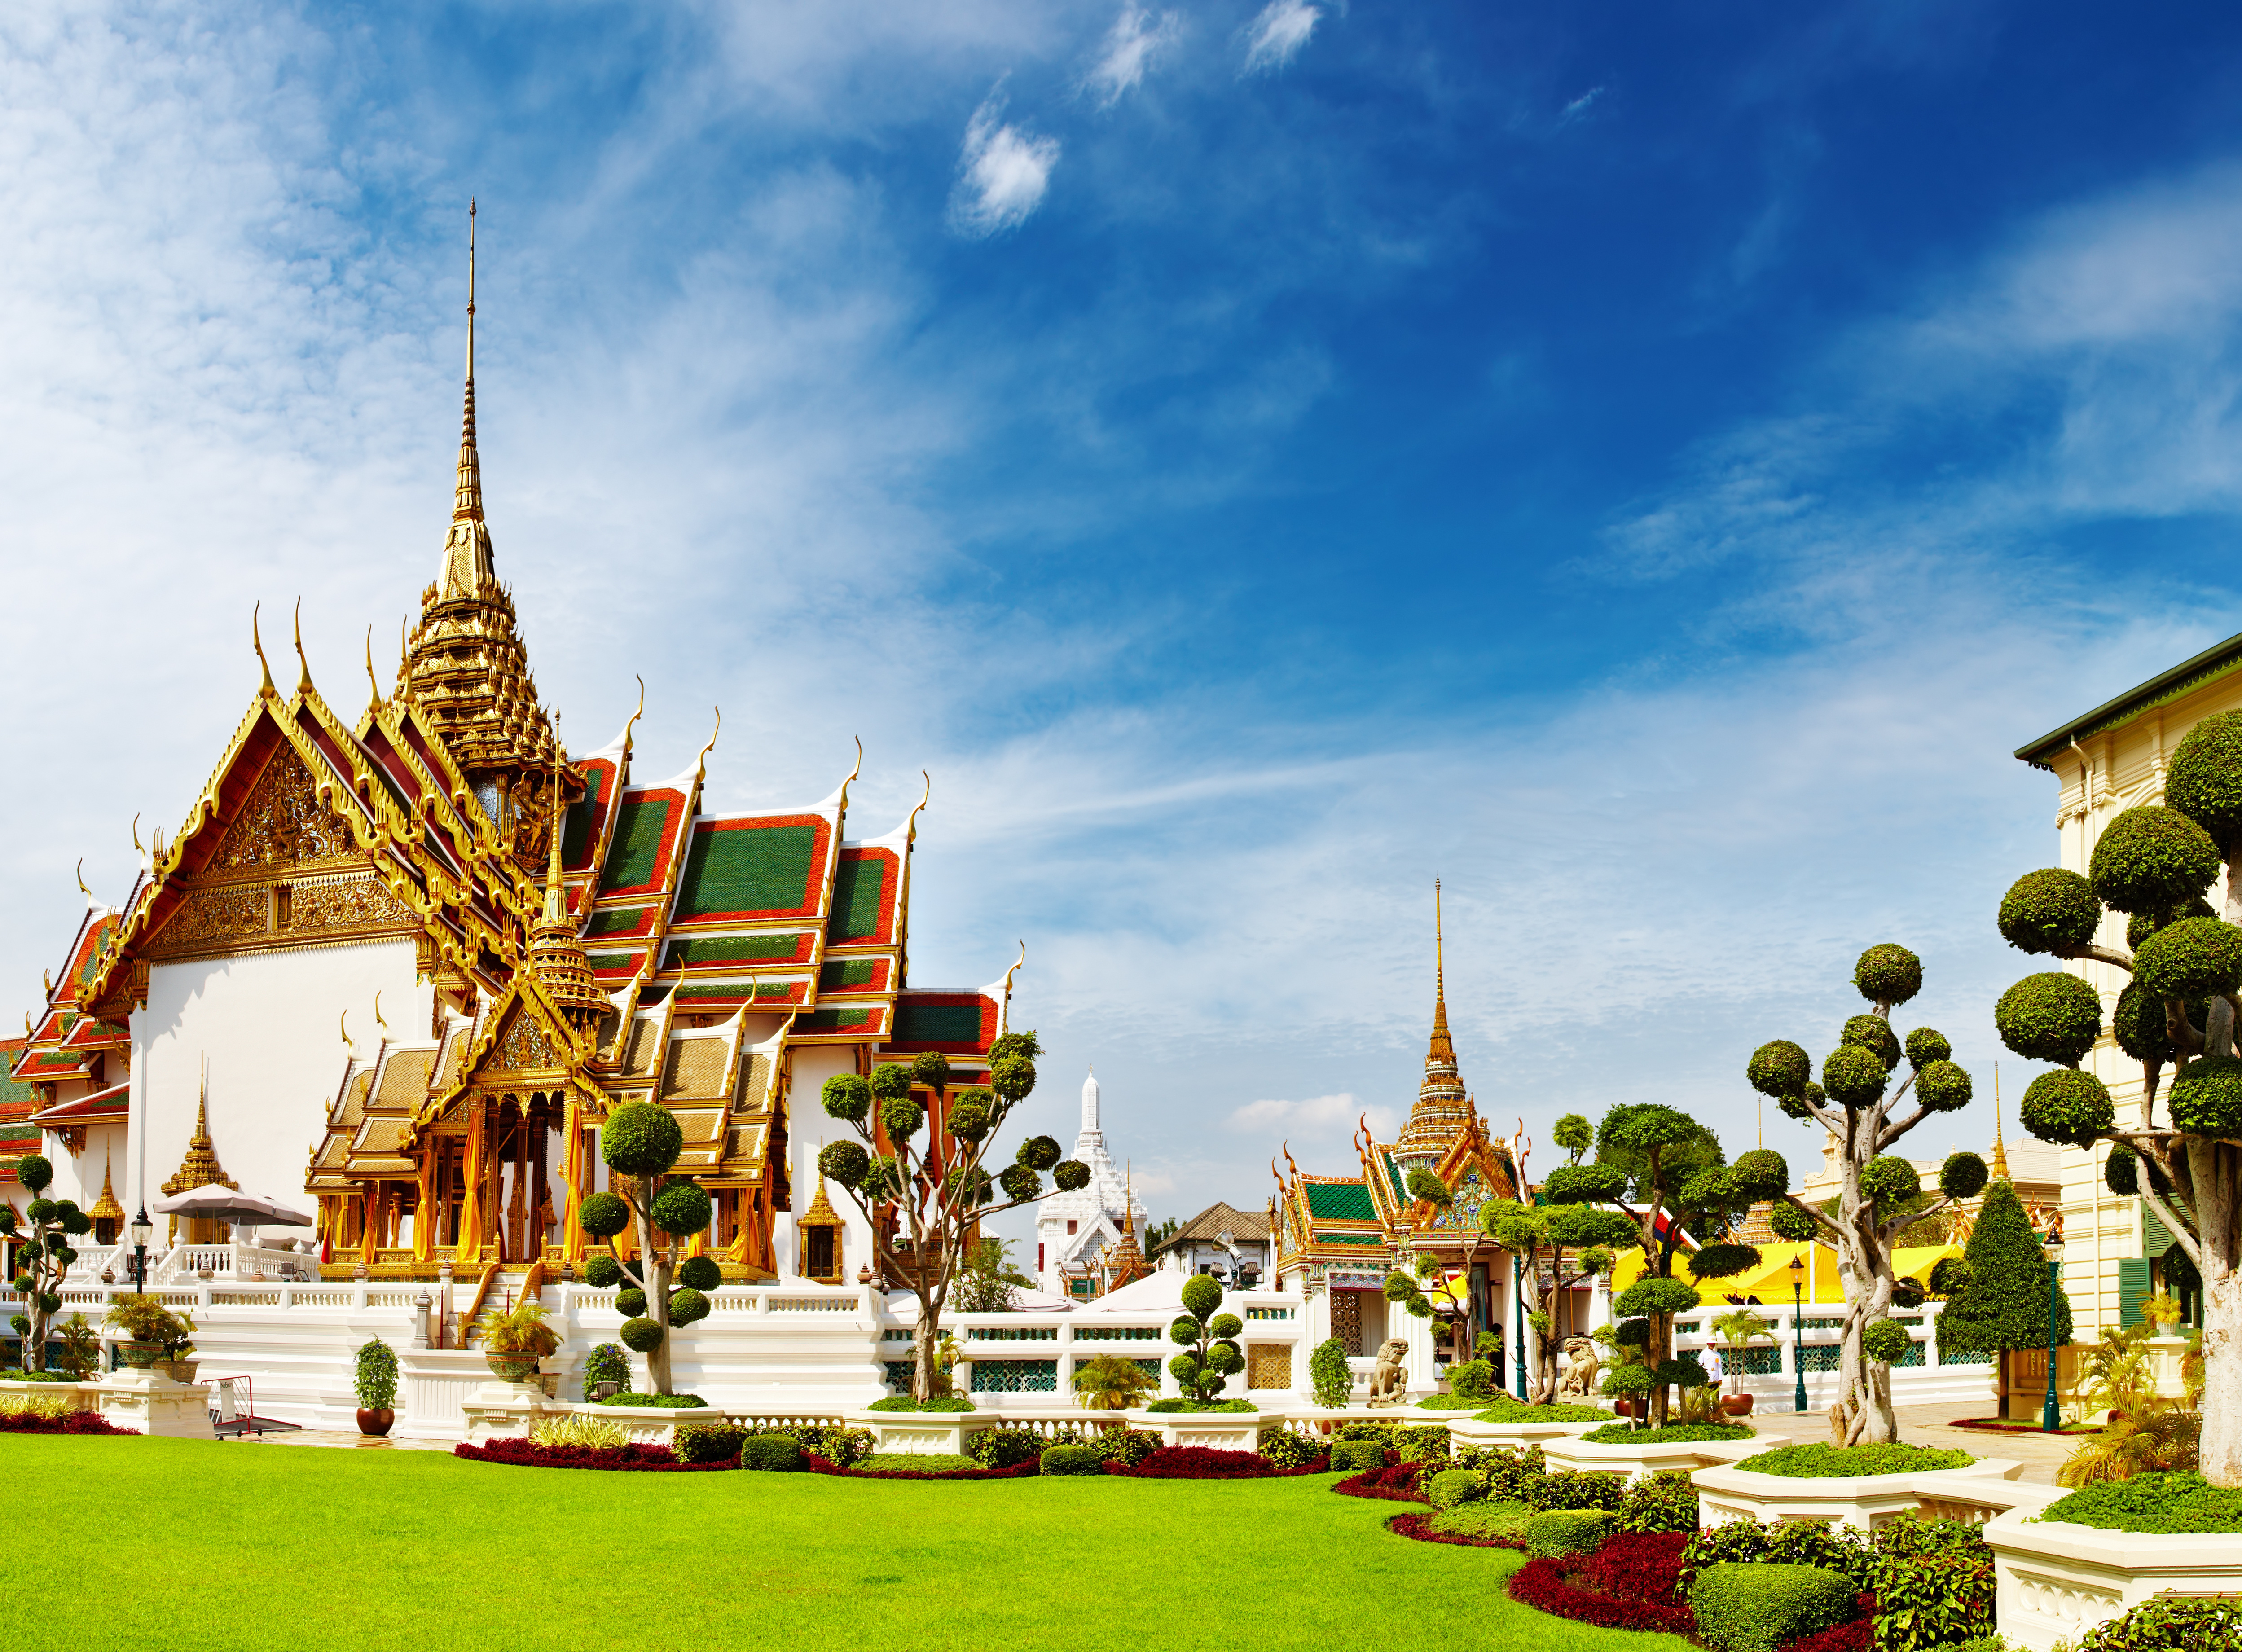 Красивый бангкок. Храм изумрудного Будды в Бангкоке. Королевский дворец в Бангкоке. Большой Королевский дворец (Grand Palace) и храм изумрудного Будды. Королевский дворец и храм изумрудного Будды (г. Бангкок).